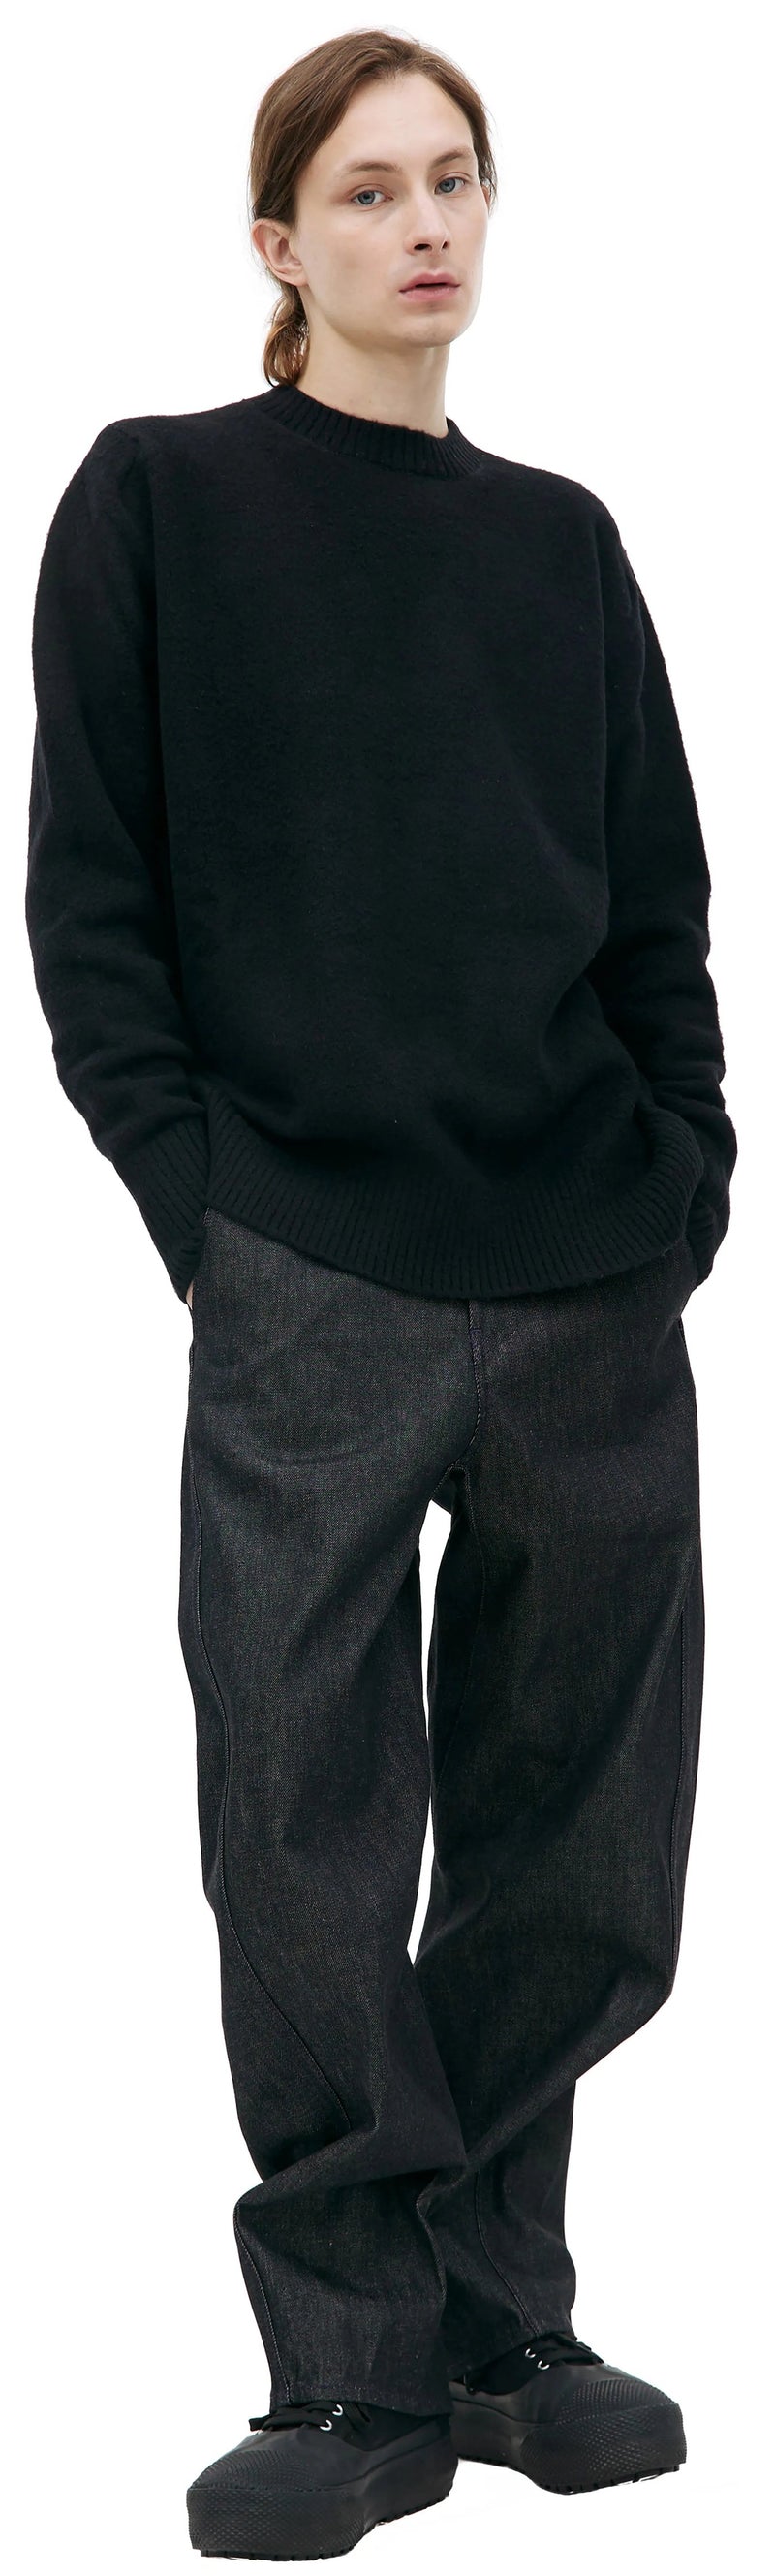 Whistler Wool Crewneck Sweater (Black)